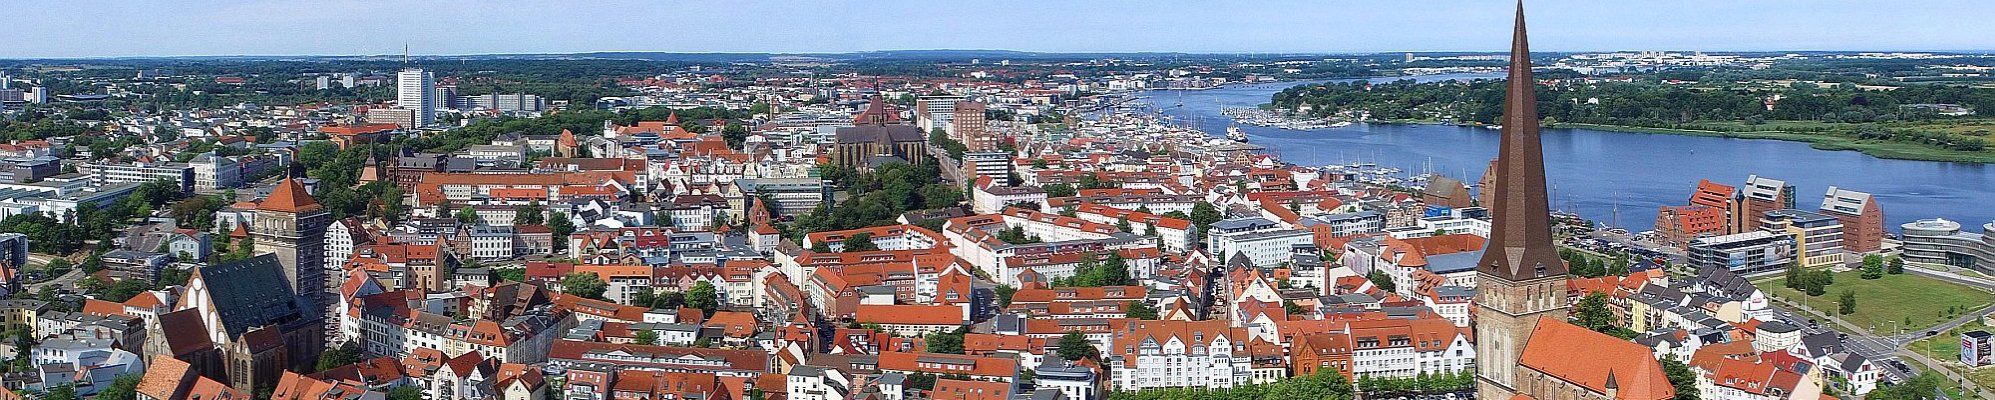 Panorama Rostock © Rostock Marketing - S. Krauleidis